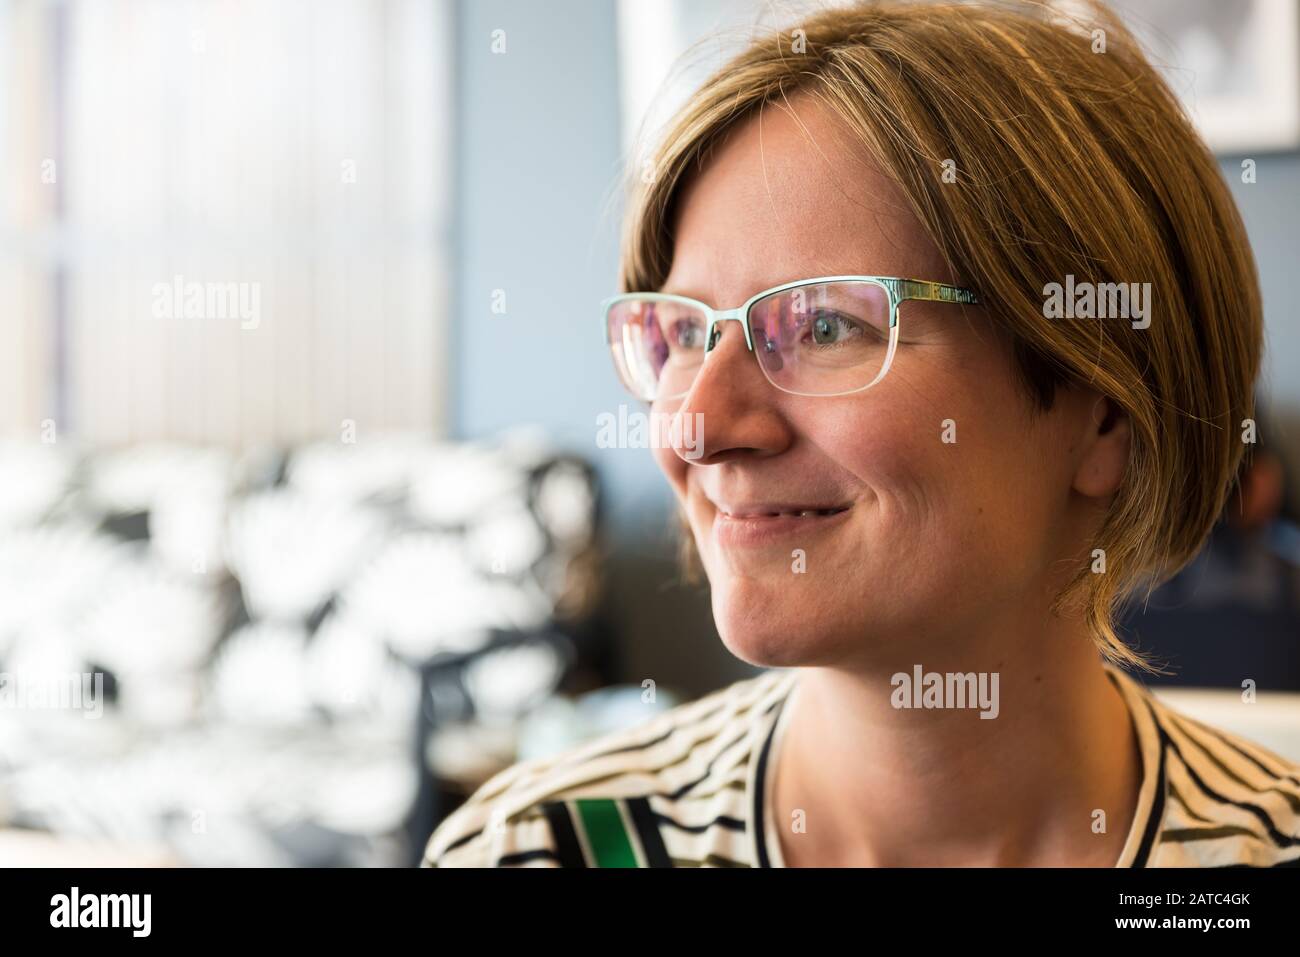 Gros plan portrait d'une femme de trente ans séduisante avec des lunettes et une chemise classique à rayures vertes Banque D'Images